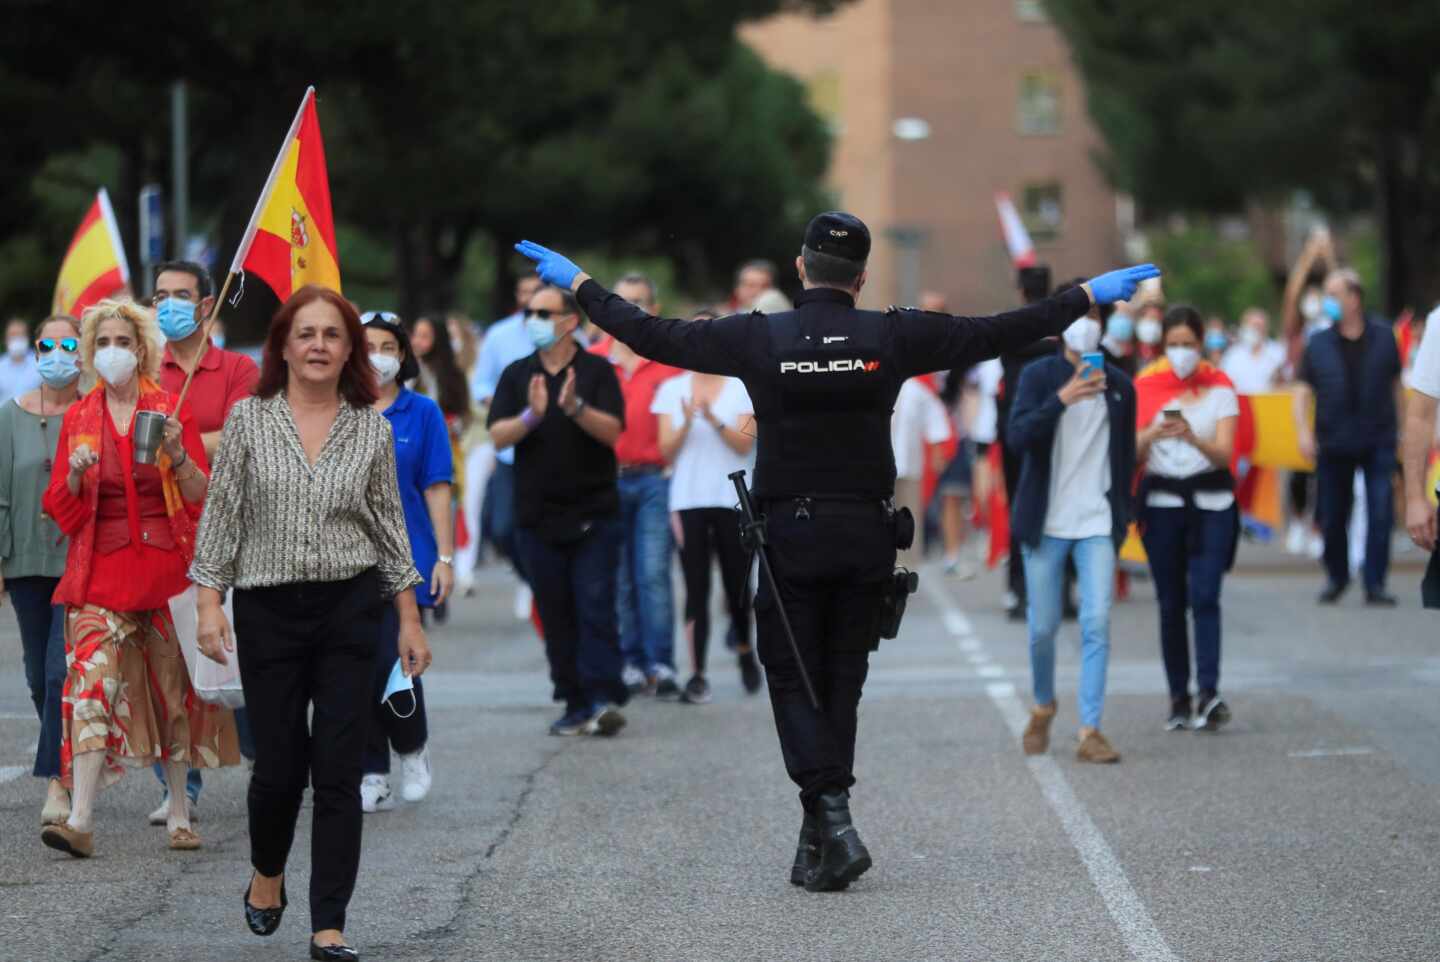 El delegado de Gobierno de Madrid sobre las "aglomeraciones": "Patriotismo es velar por la salud"